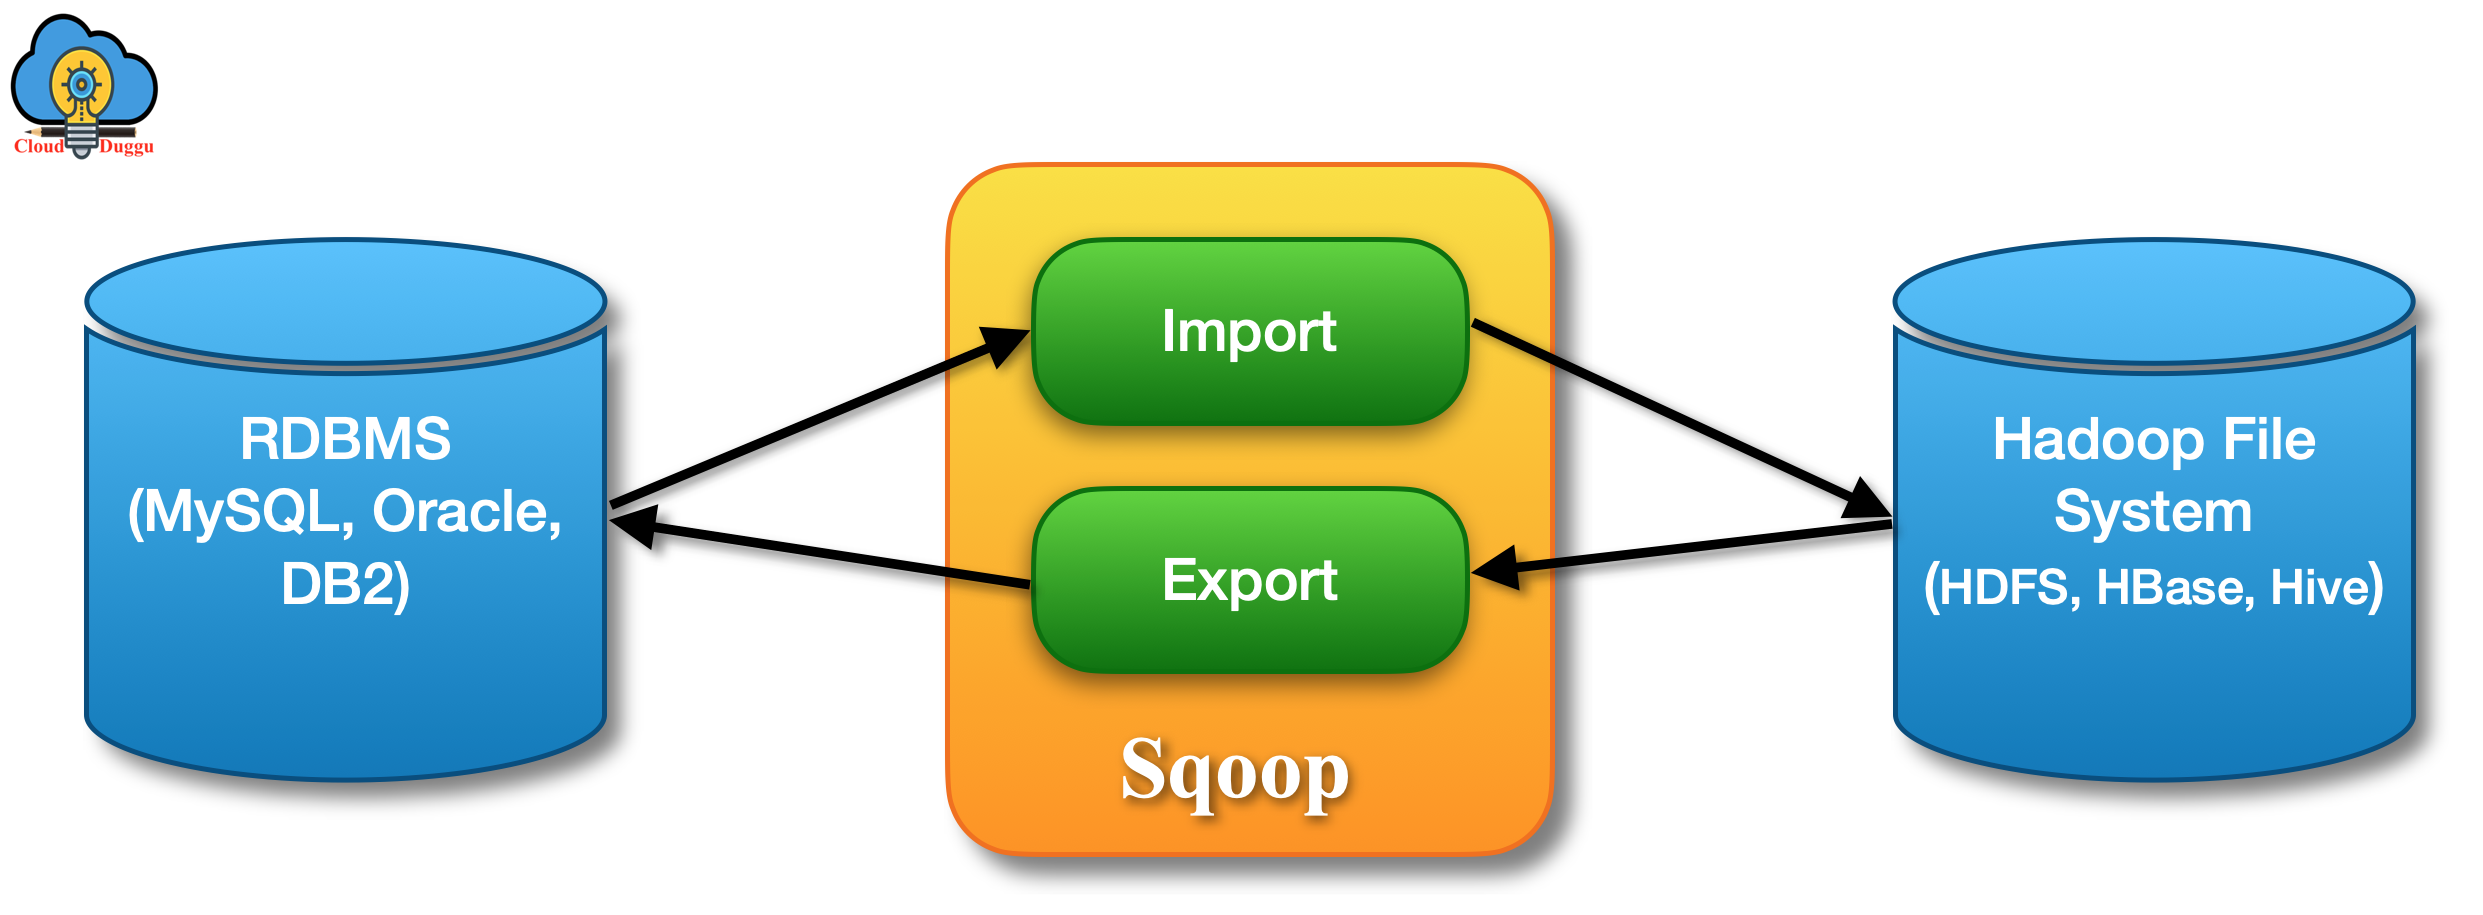 Sqoop Architecture